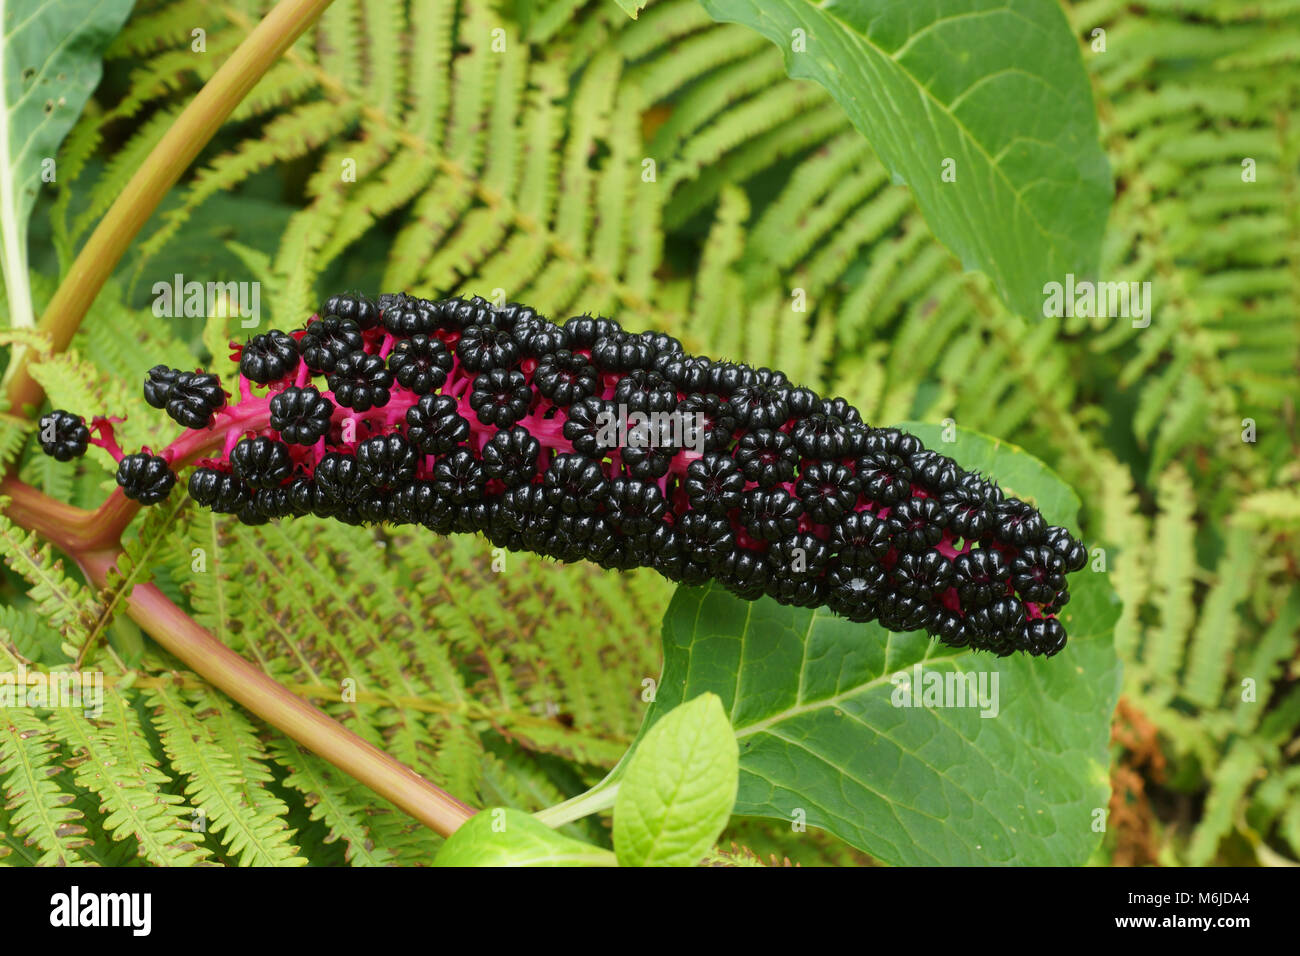 Phytolacca acinosa Laub und Früchte. Phytolacca ist eine Gattung der mehrjährigen Pflanzen. Stockfoto